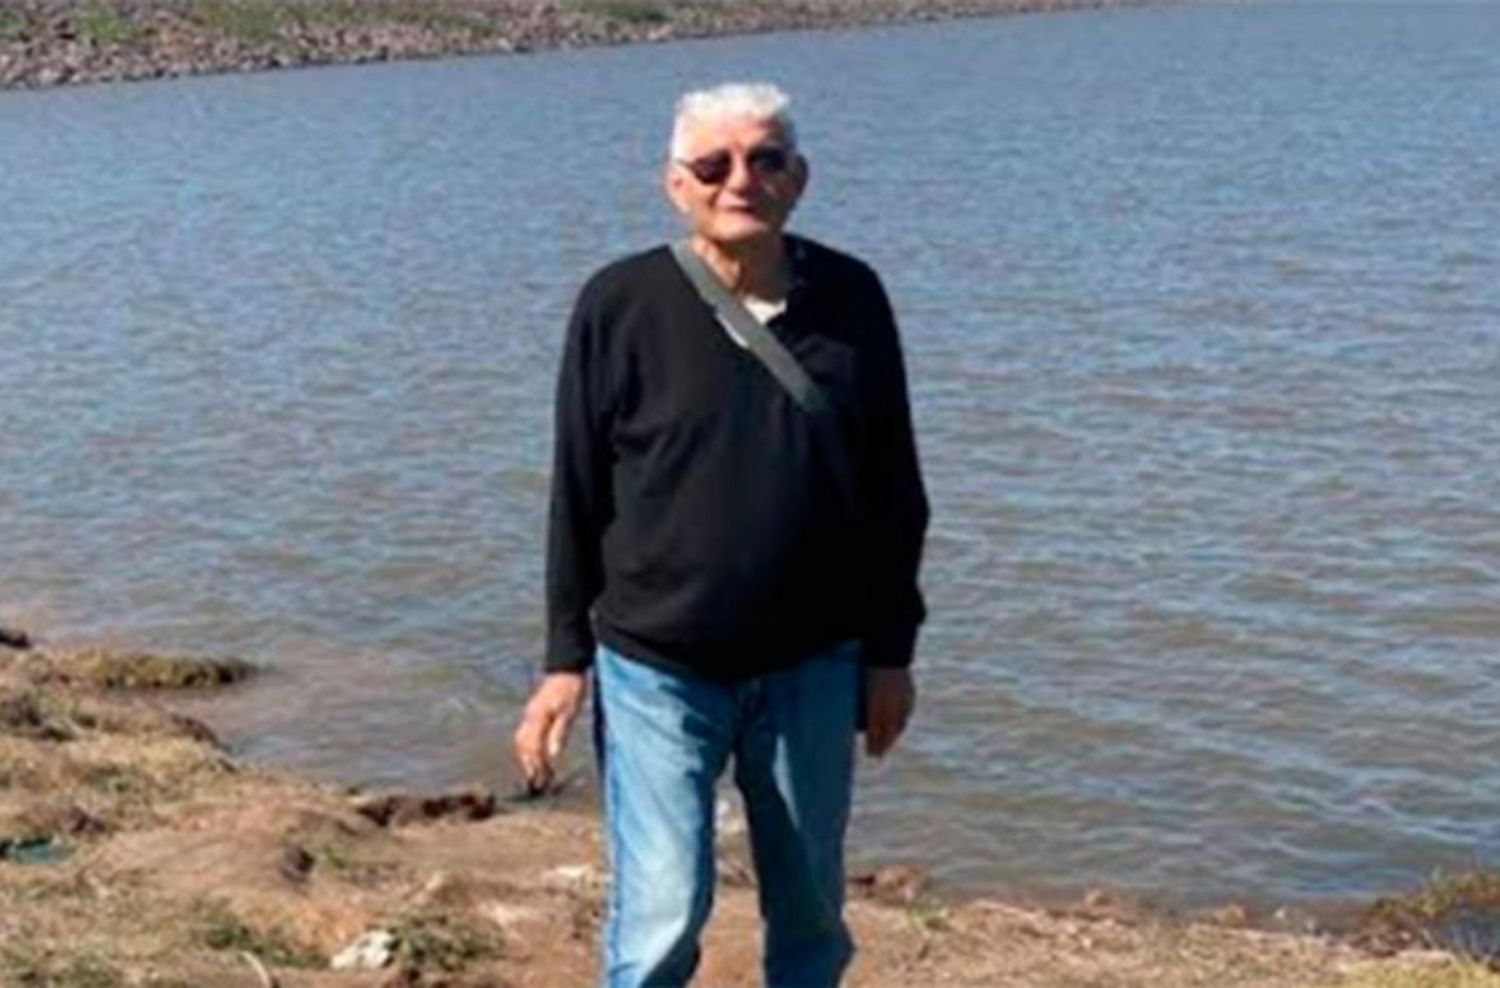 Un marplatense de 81 años que padece Alzheimer, desapareció hace una semana en Termas de Río Hondo